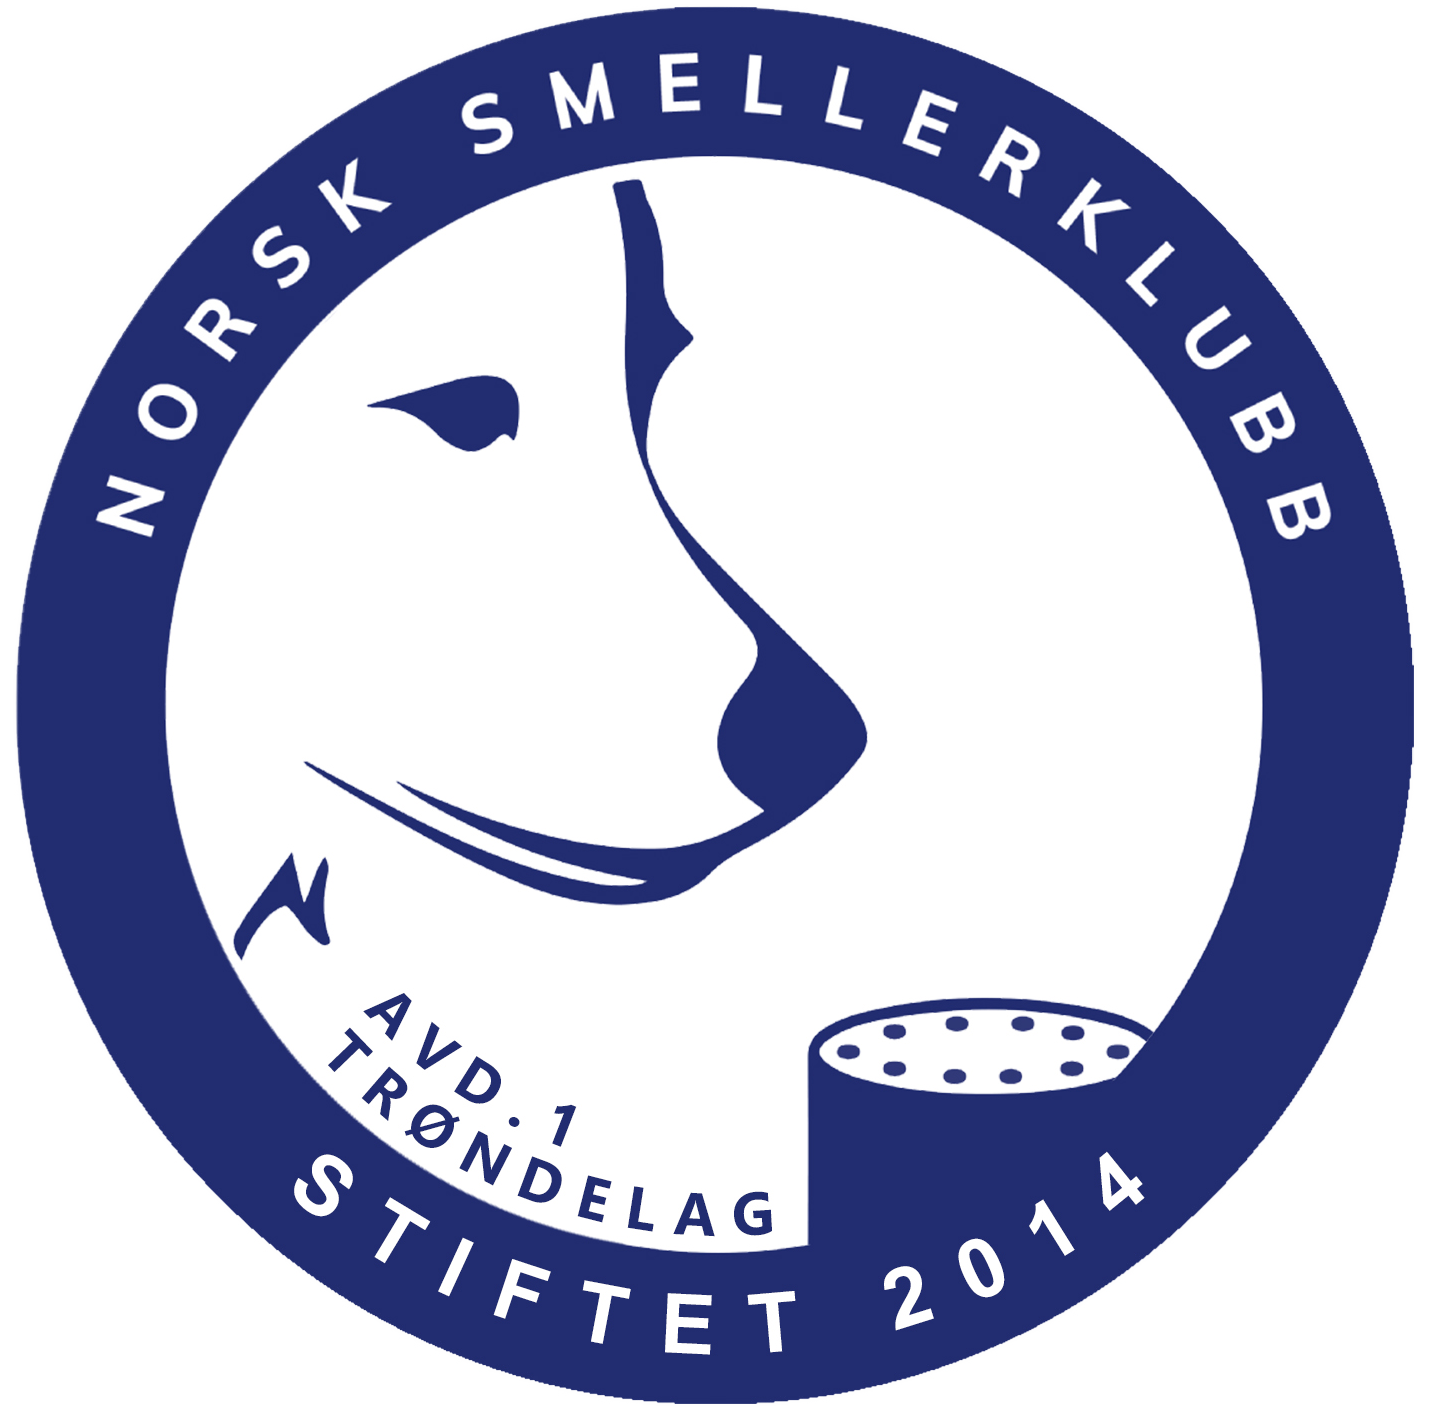 Norsk Smellerklubb avd 1 Trøndelag